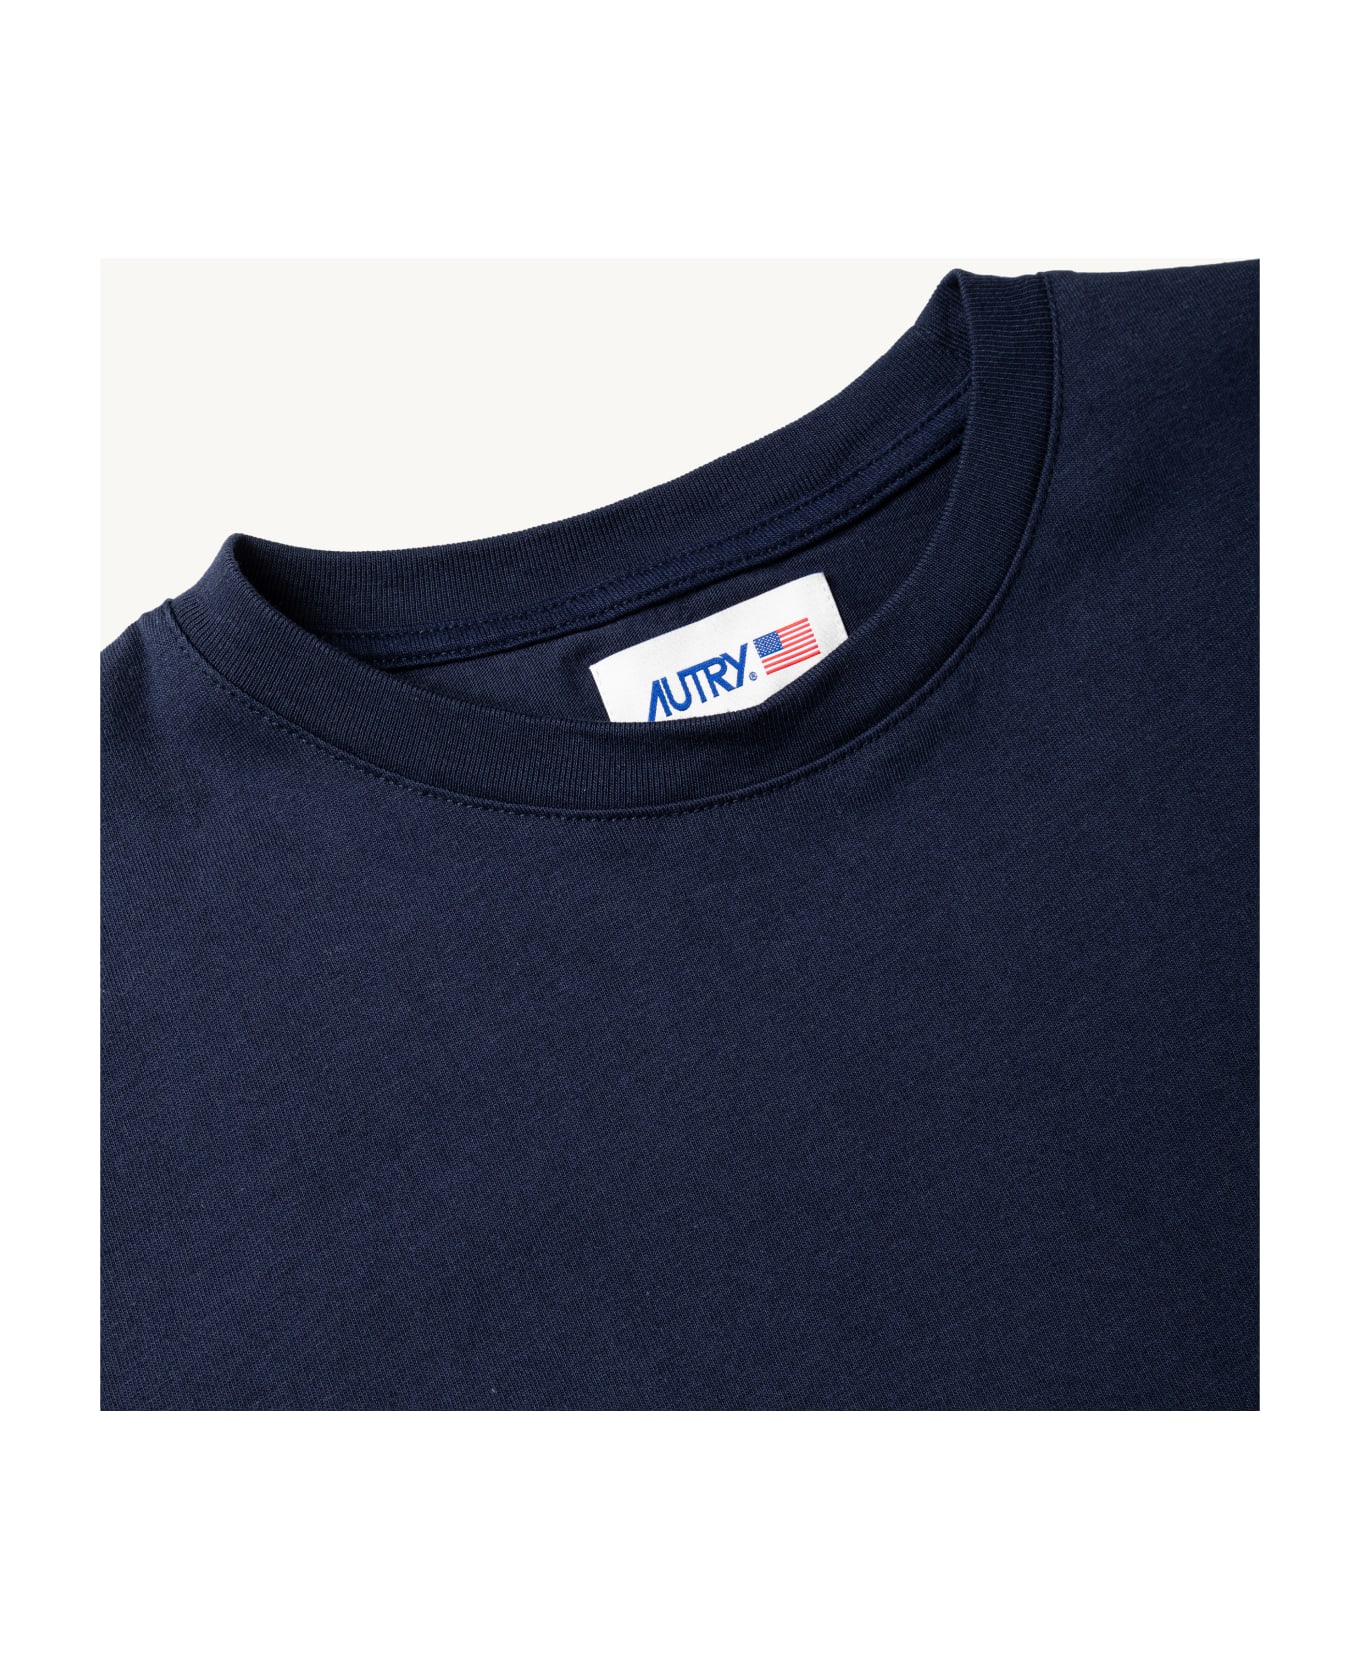 Autry T-shirt - Blue Tシャツ